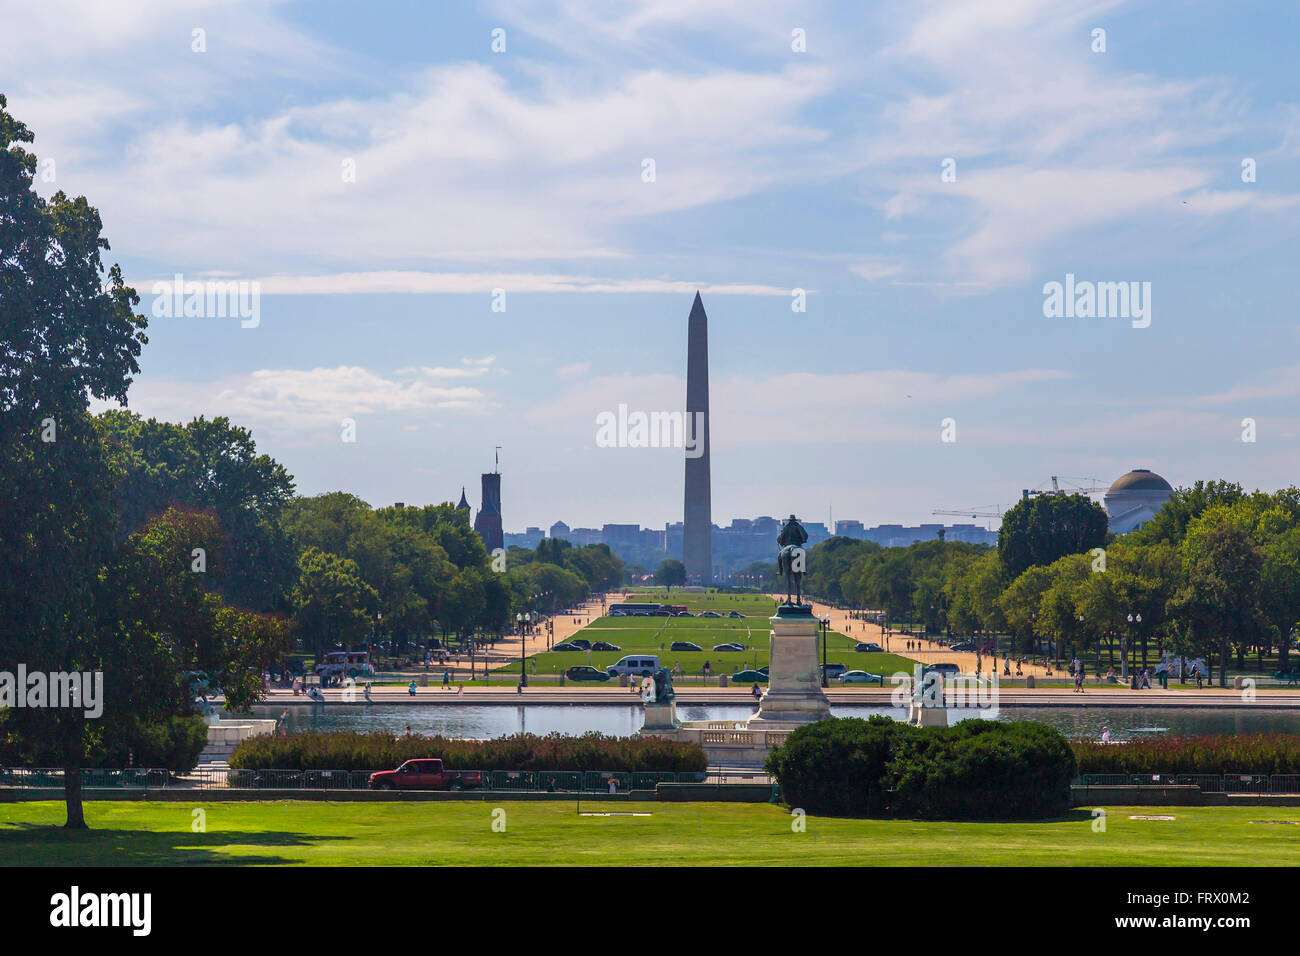 Vue sur la réflexion intérieure, Washington Mall, le Washington Monument, le Lincoln Memorial, Smithsonian Castle seen from Capitol Hill Banque D'Images